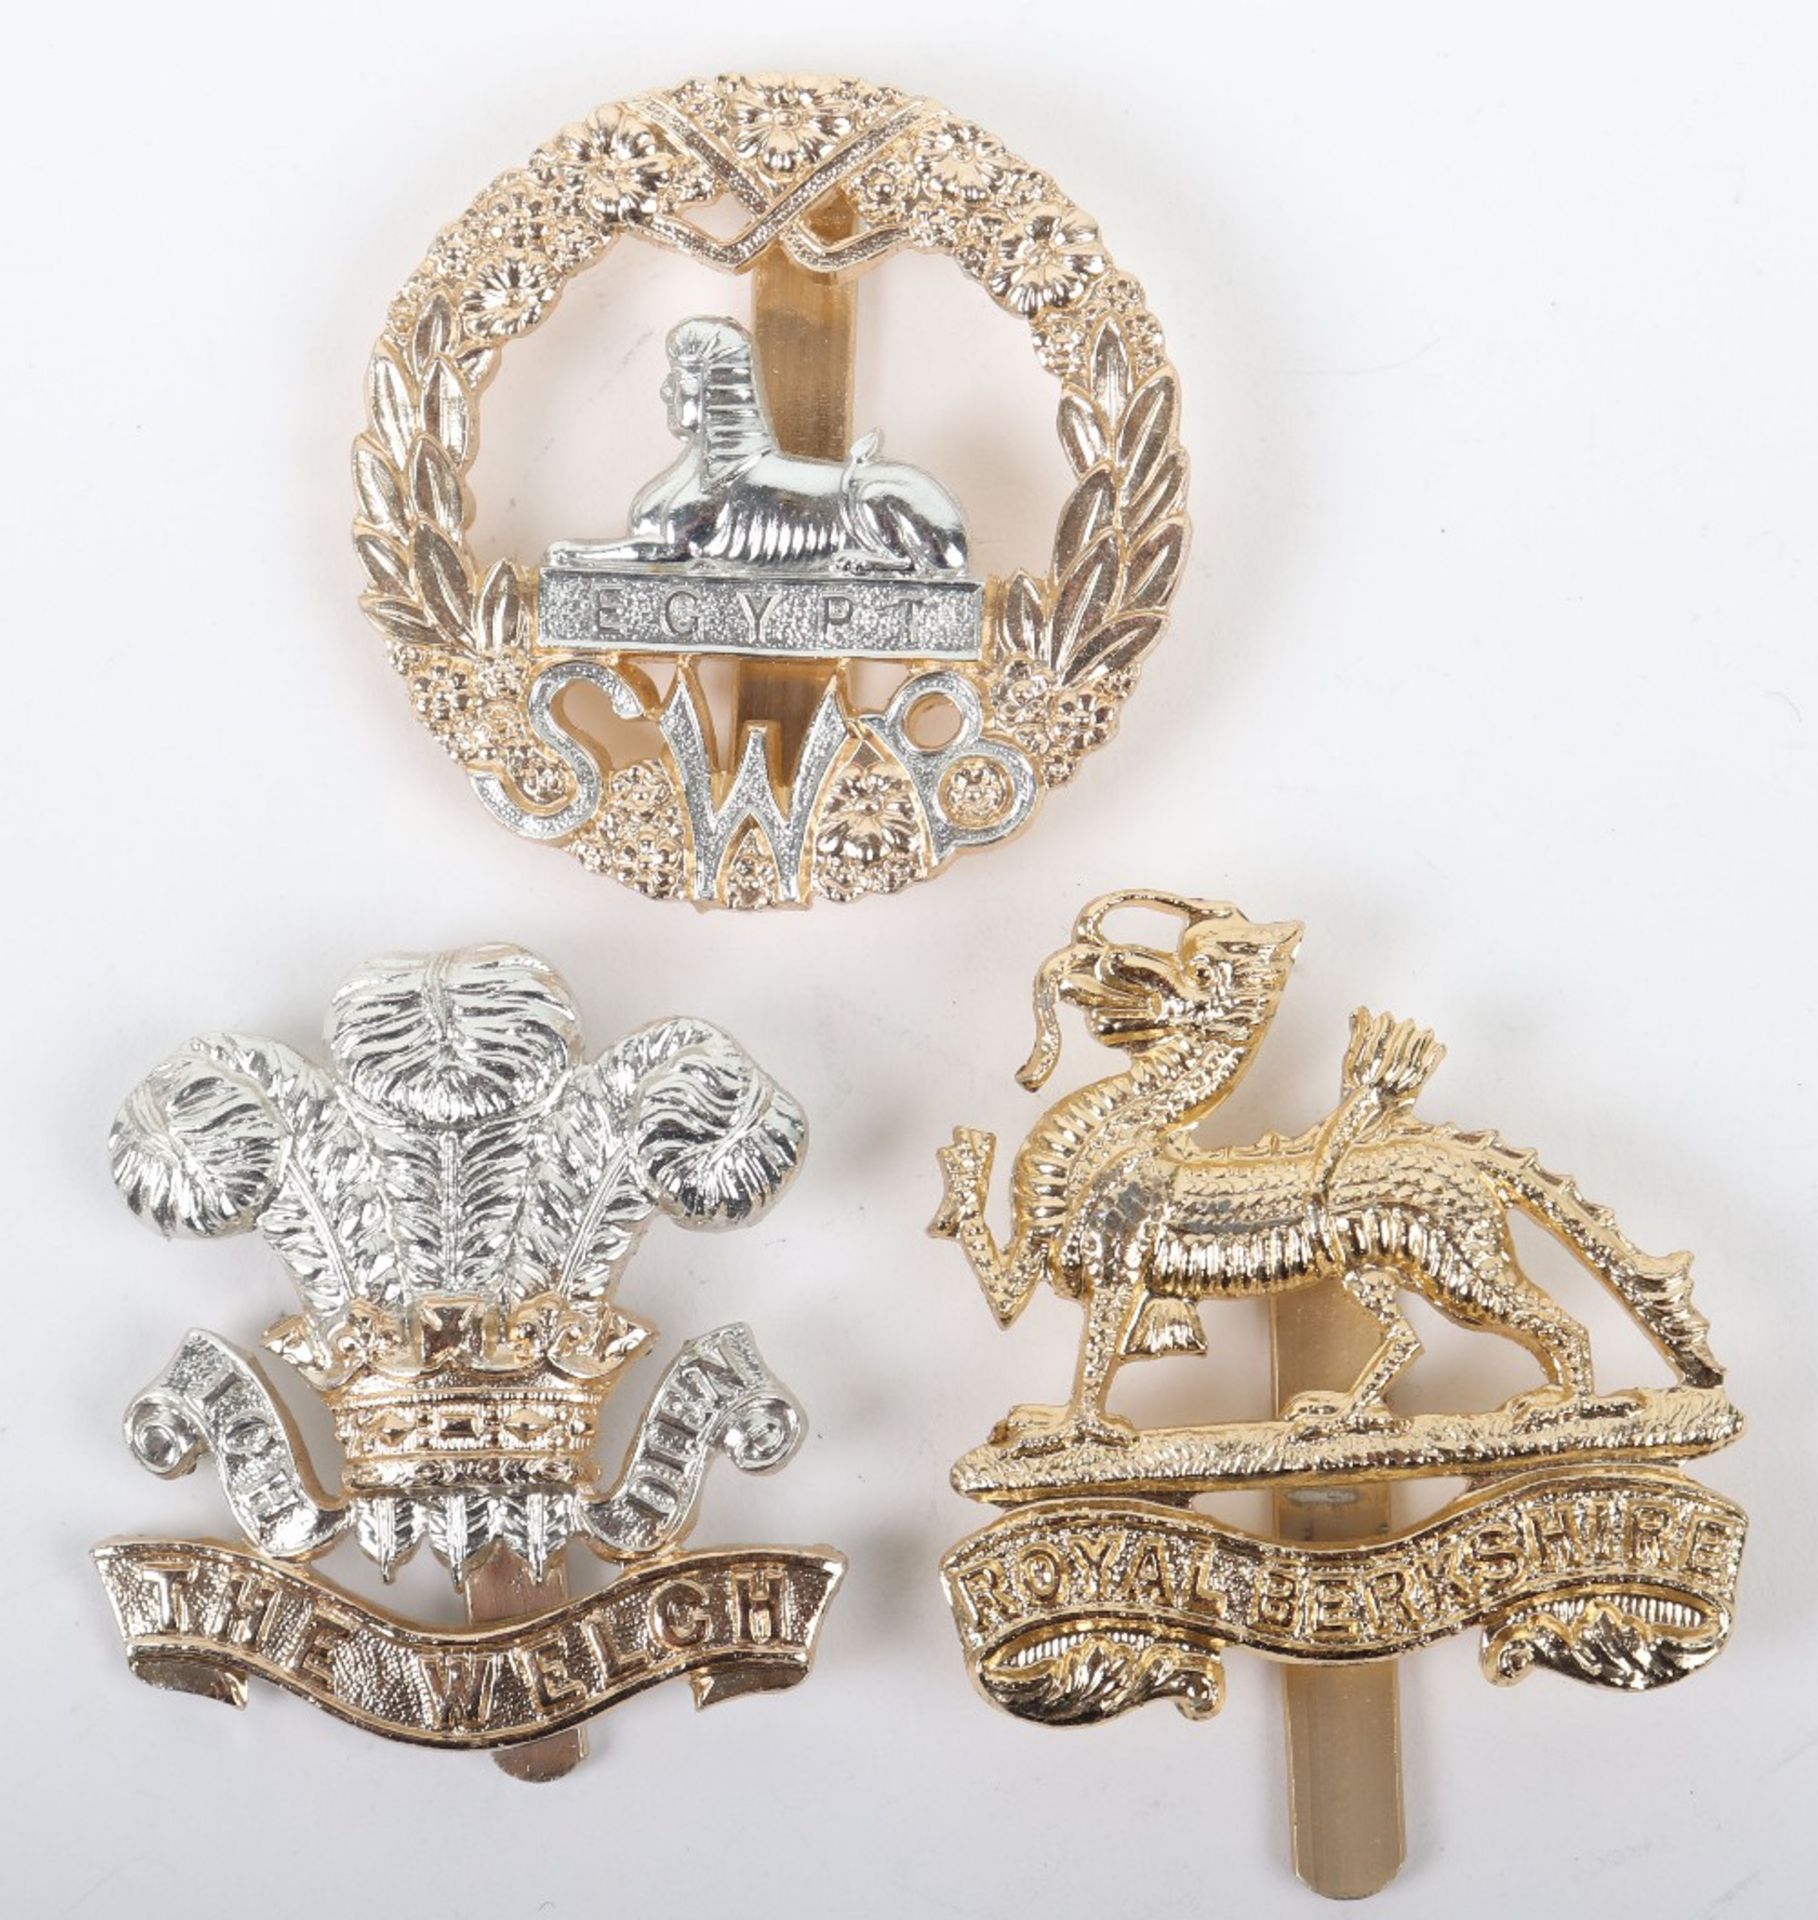 3x Anodised Aluminium British Infantry Regiments Cap Badges